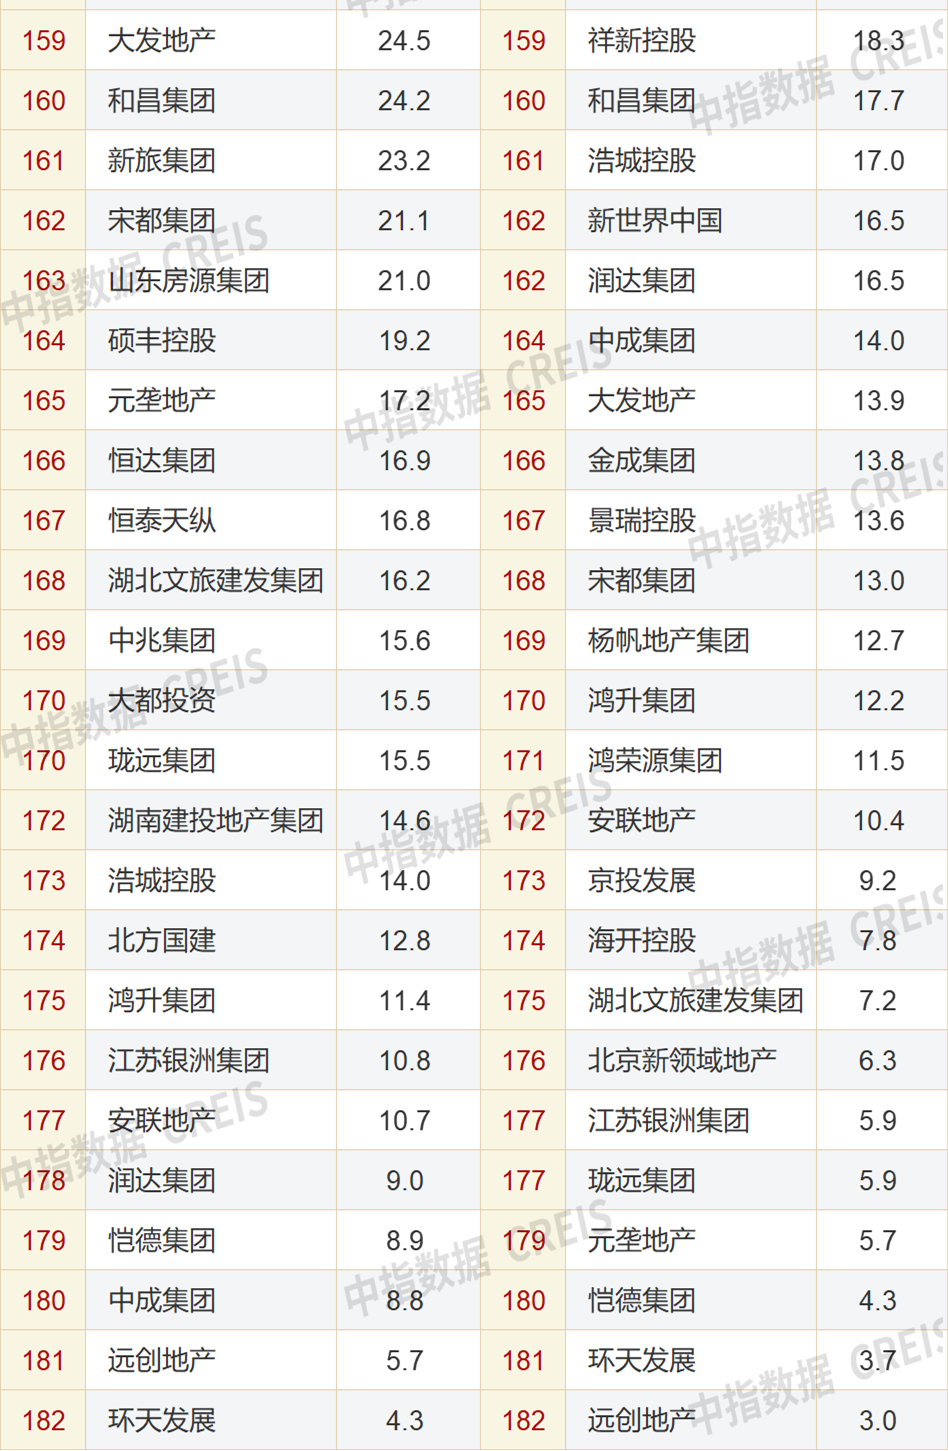 2023年1-7月中国房地产企业销售业绩排行榜发布